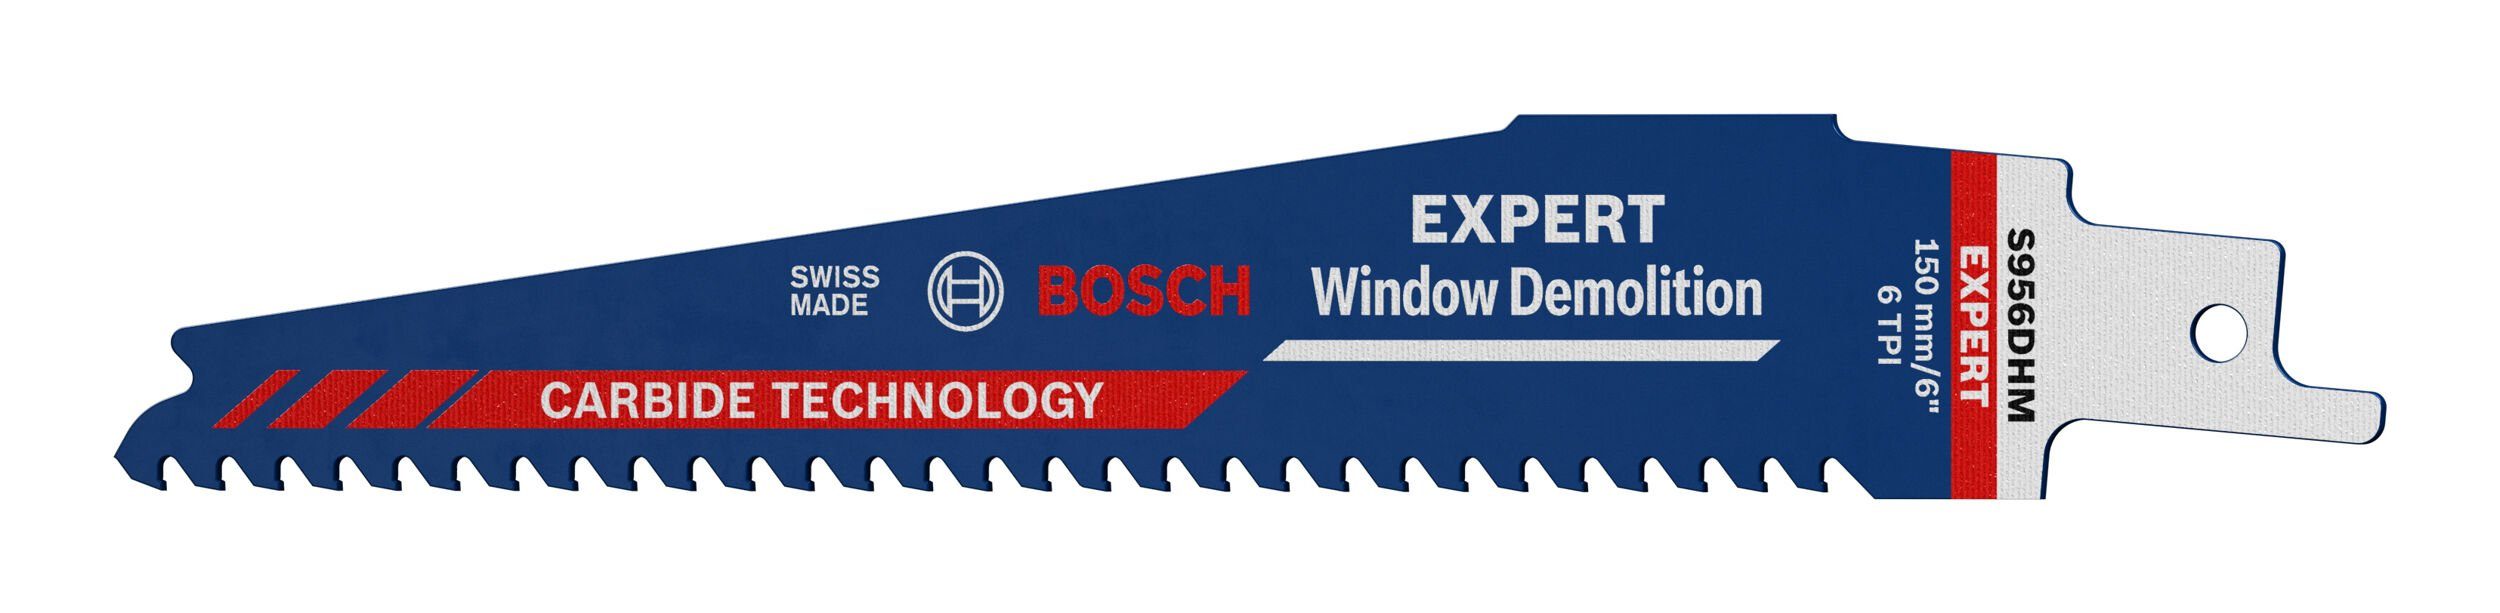 BOSCH Säbelsägeblatt Expert Window Demolition (10 Stück), Expert S 956 DHM Carbide Endurance for Window Demolition - 10er-Pack